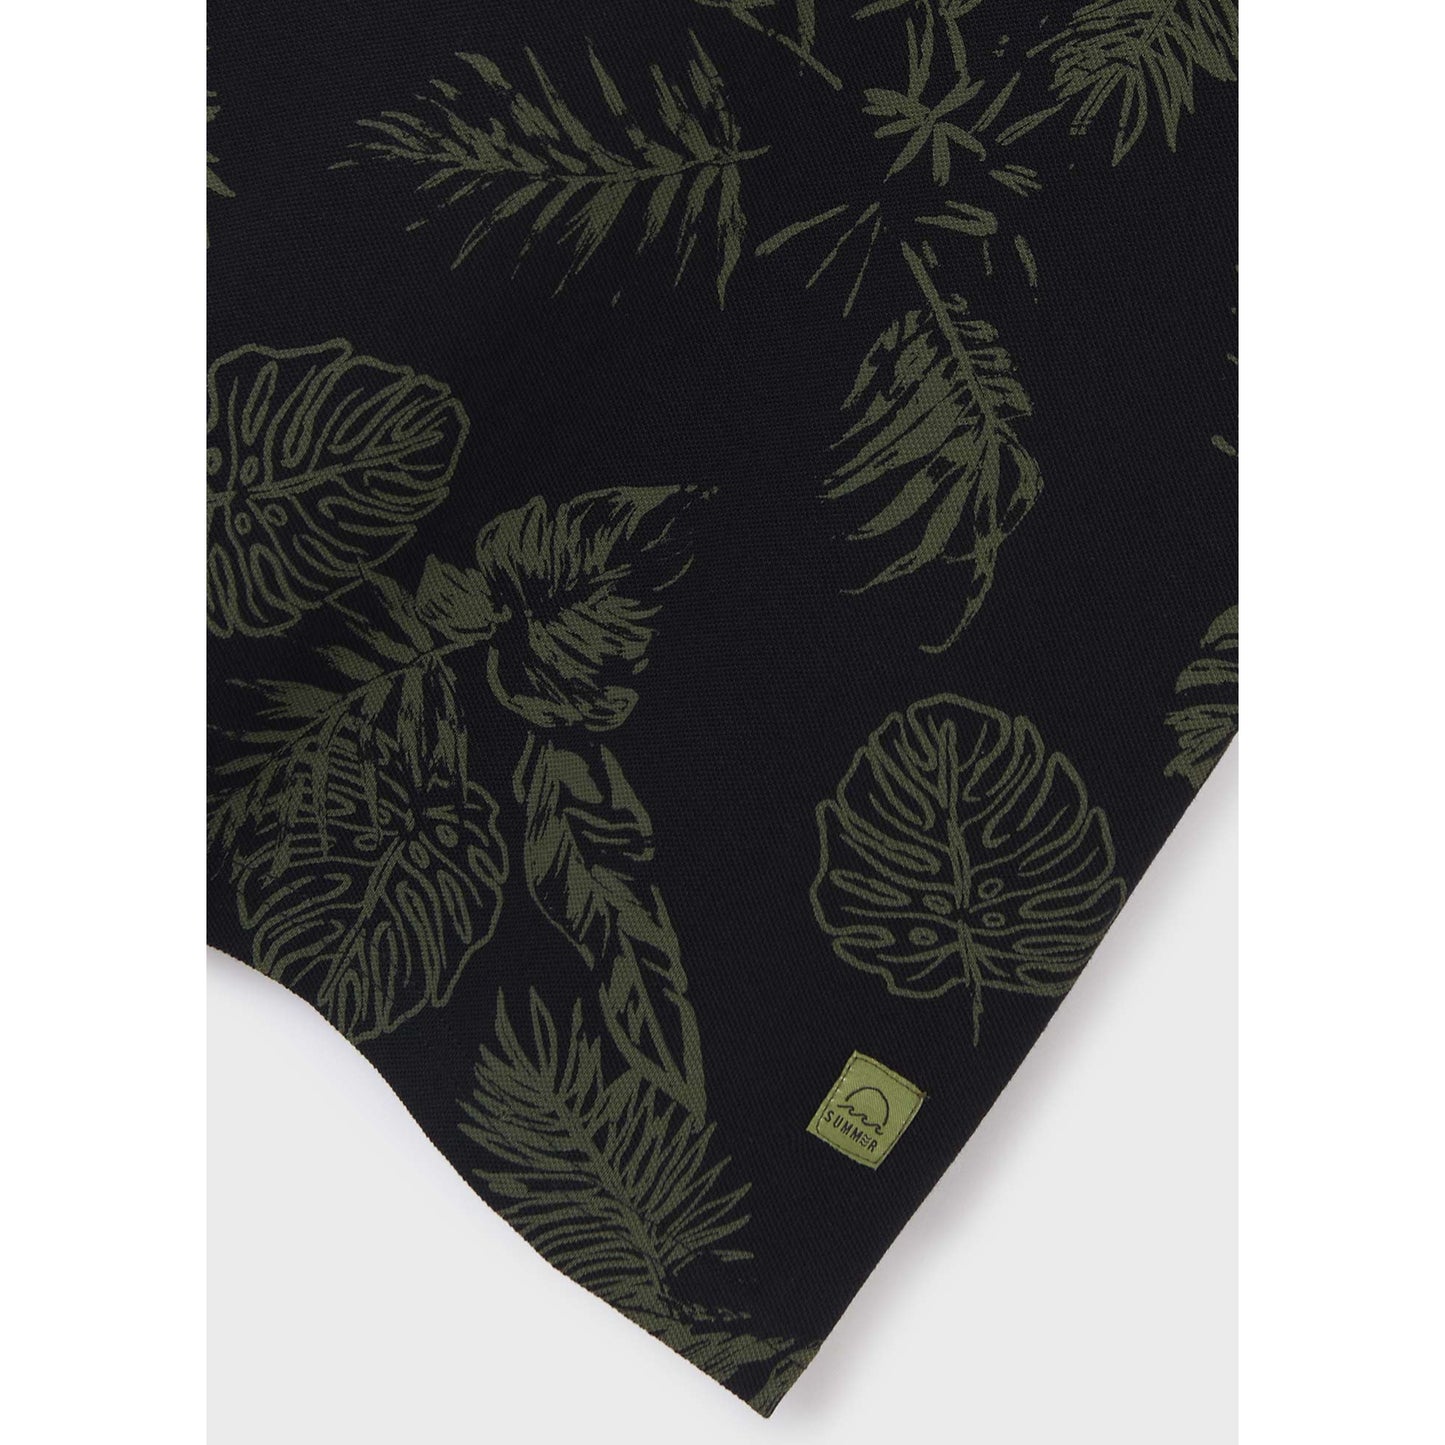 Nukutavake Short Sleeve Polo w/Leaf Pattern _Black 6106-65